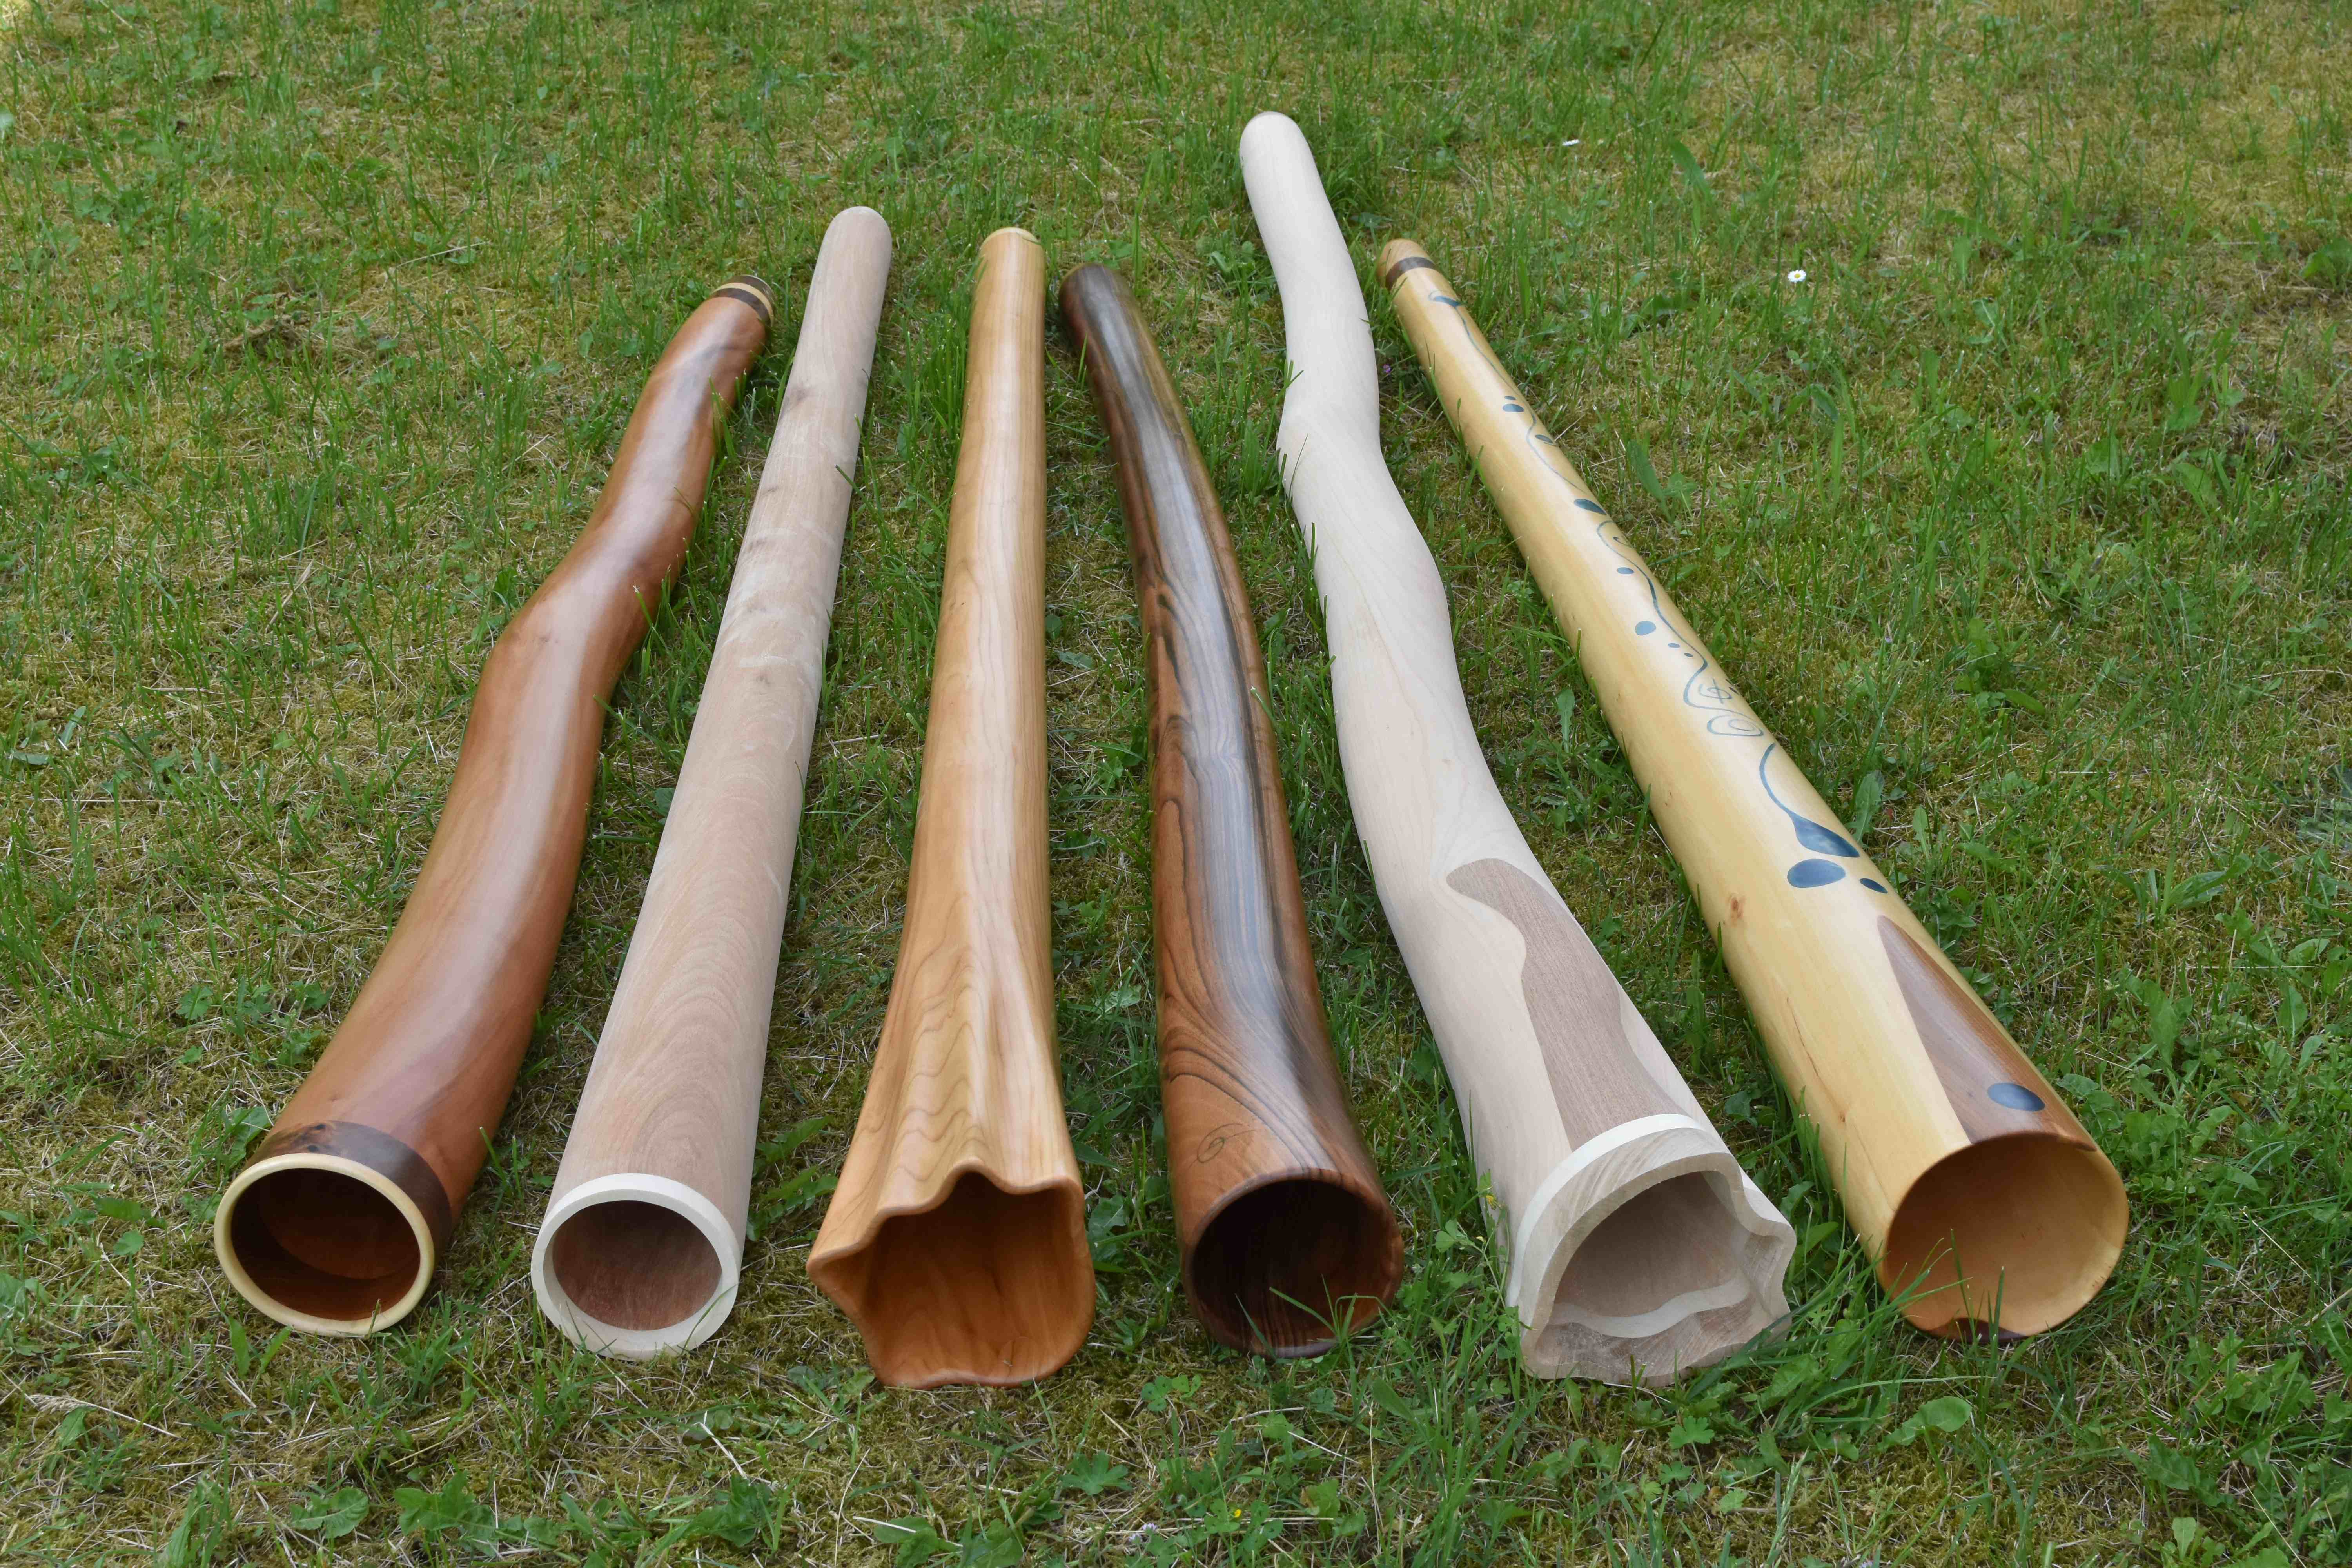 Six nouveaux didgeridoos en platane, niangon, merisier, noyer et tilleul, disponibles en mai 2018